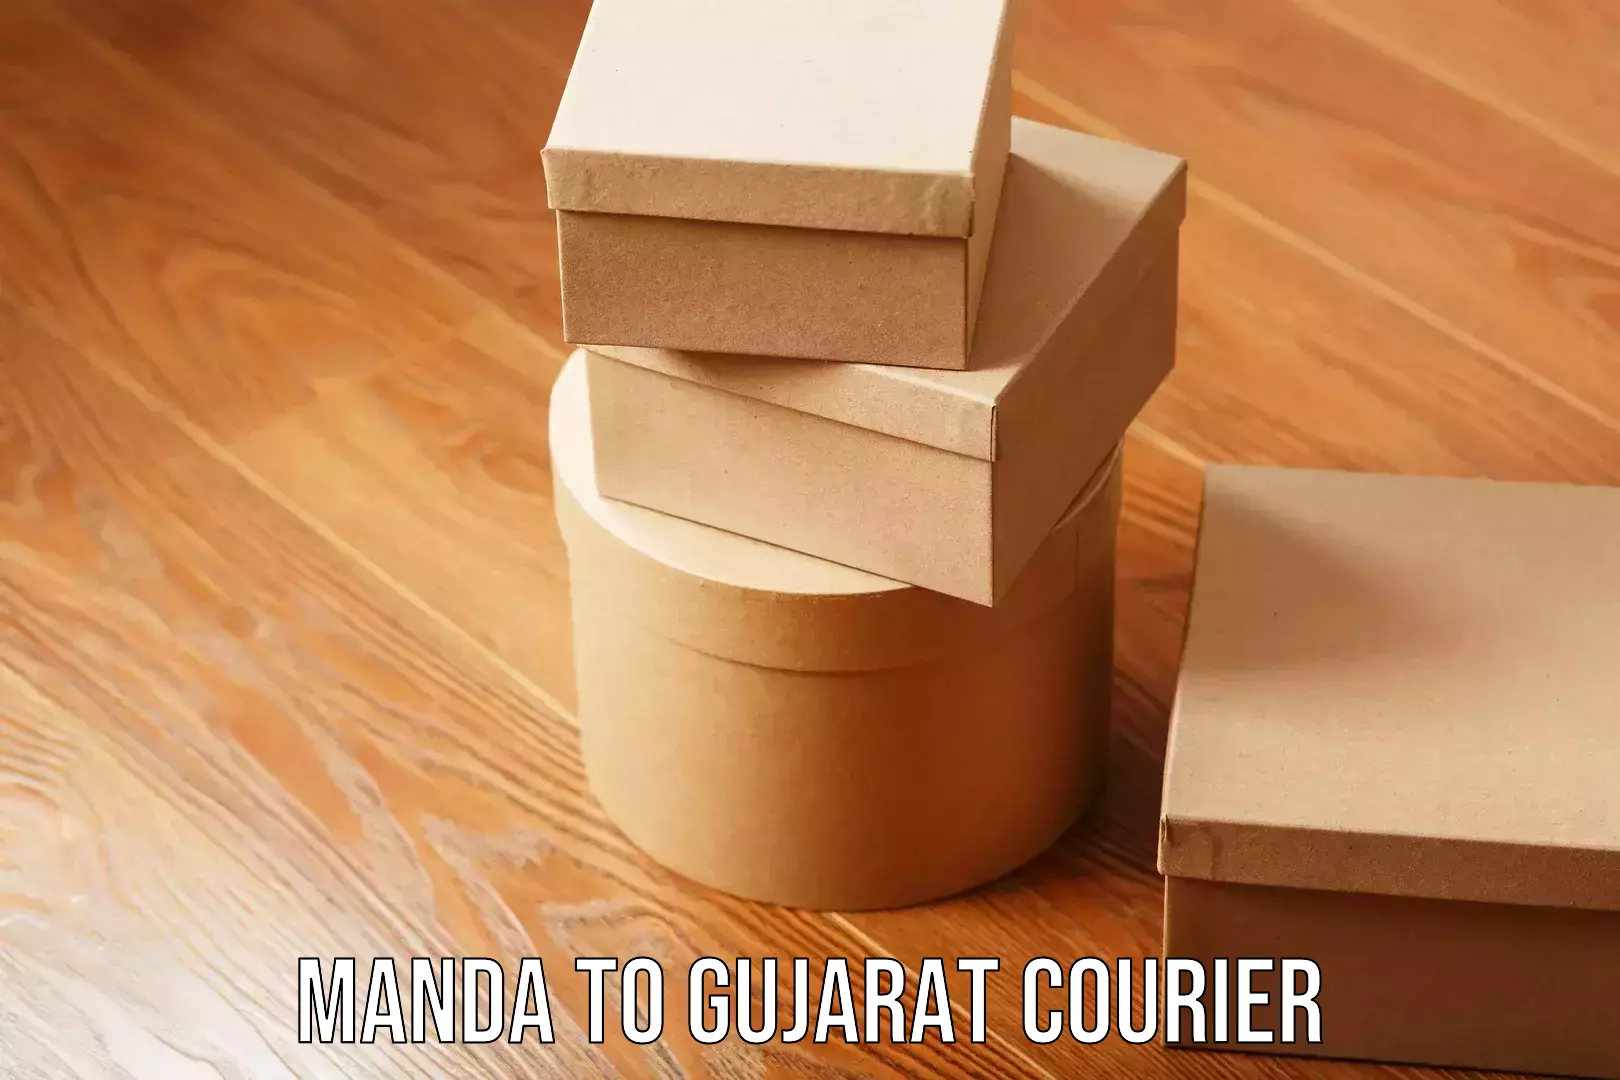 Furniture moving experts Manda to Gujarat